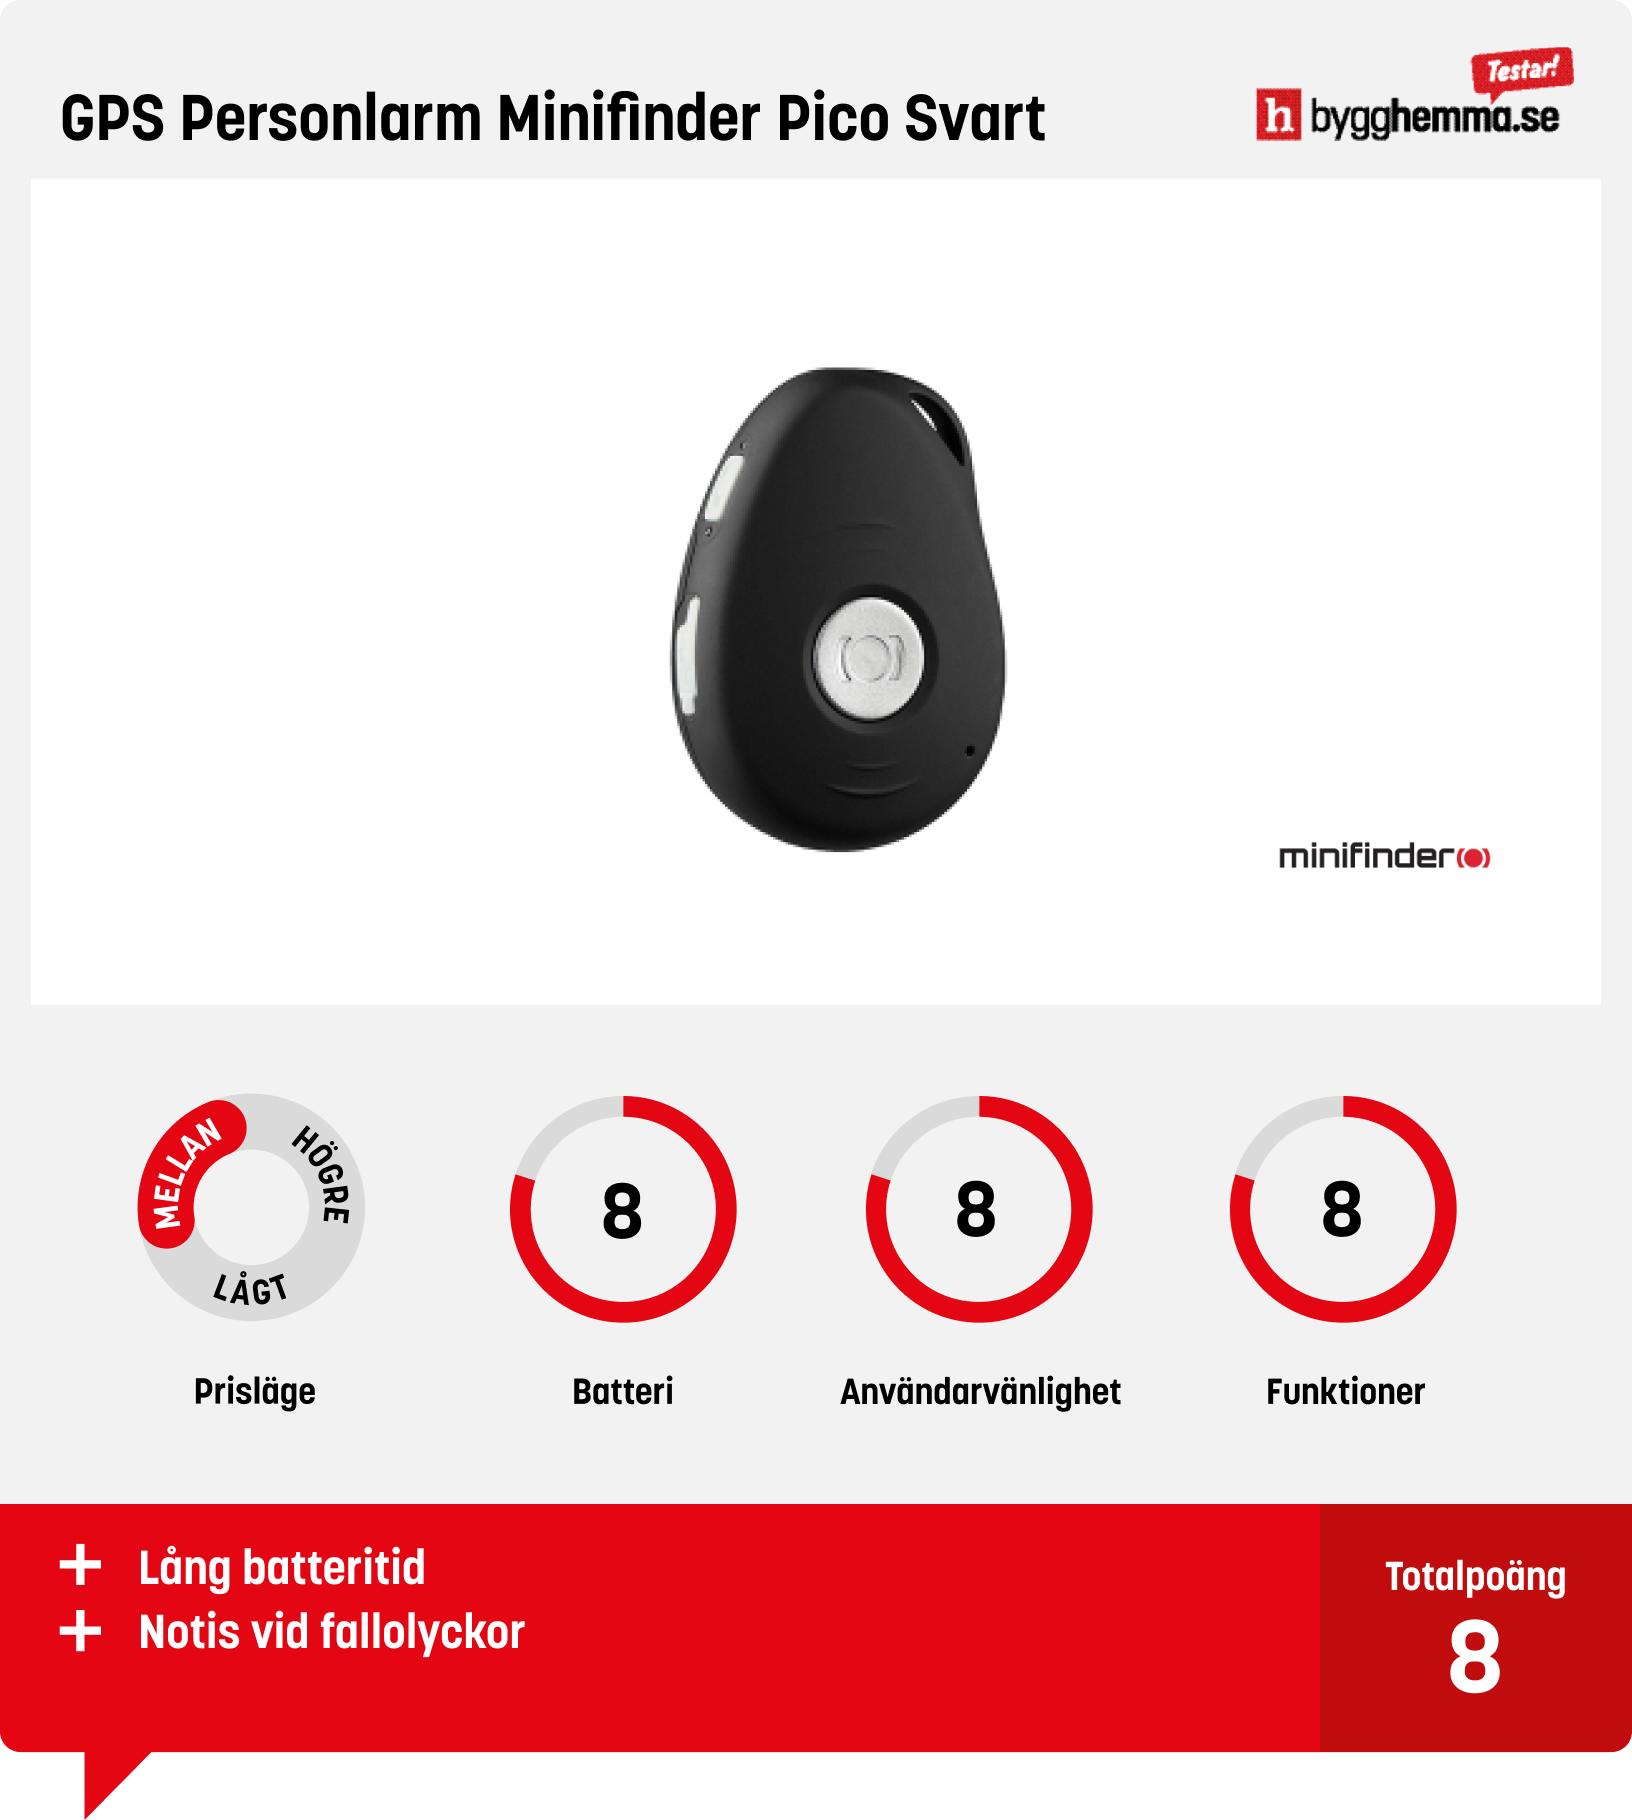 GPS tracker test - GPS Personlarm Minifinder Pico Svart